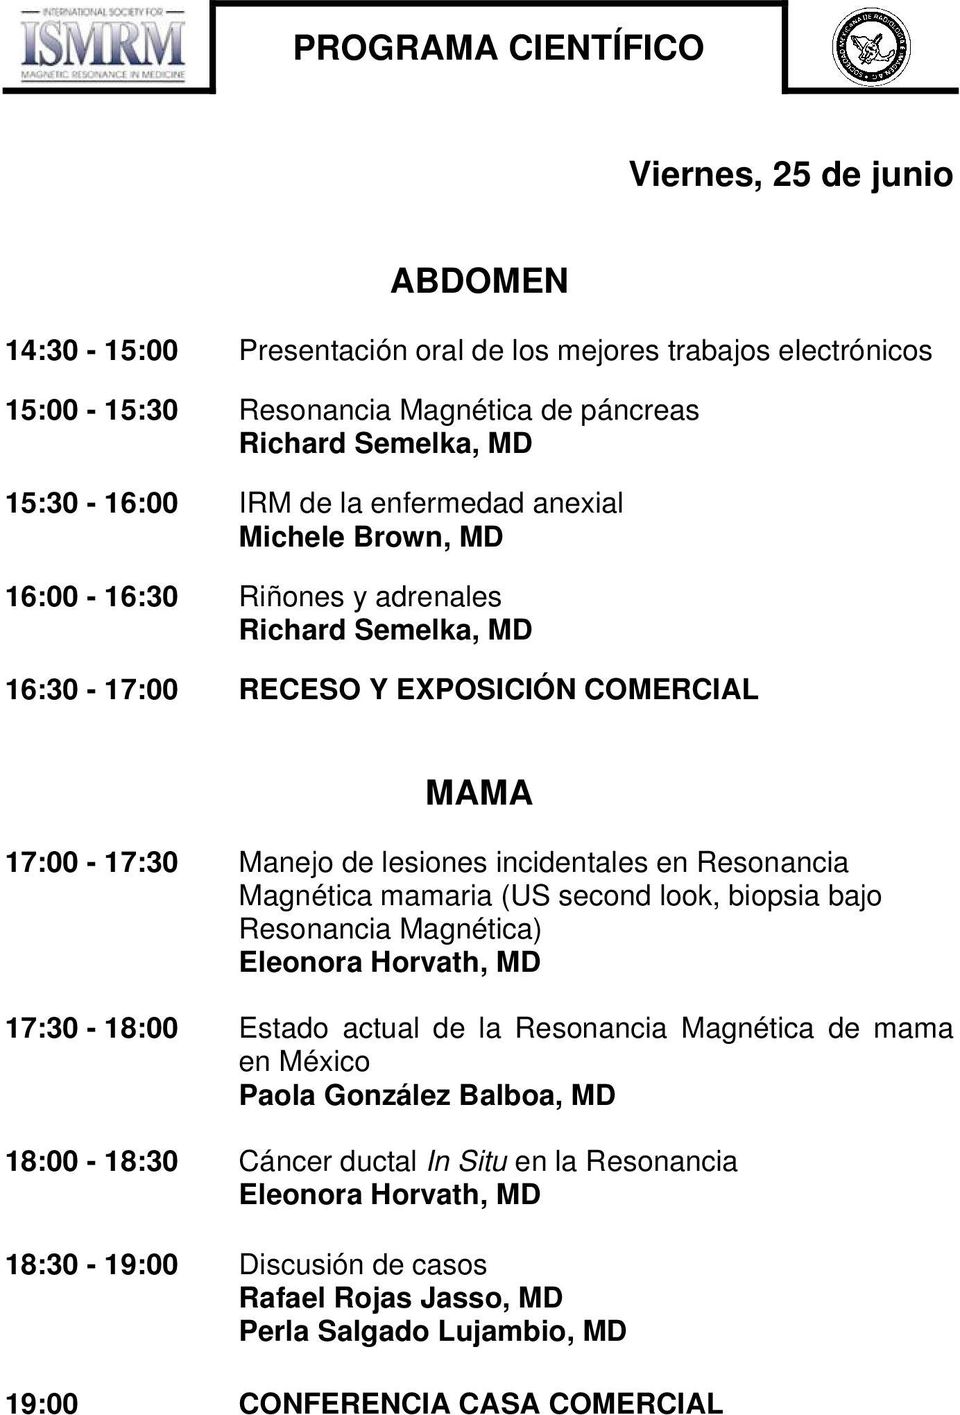 Resonancia Magnética mamaria (US second look, biopsia bajo Resonancia Magnética) Eleonora Horvath, MD 17:30-18:00 Estado actual de la Resonancia Magnética de mama en México Paola González